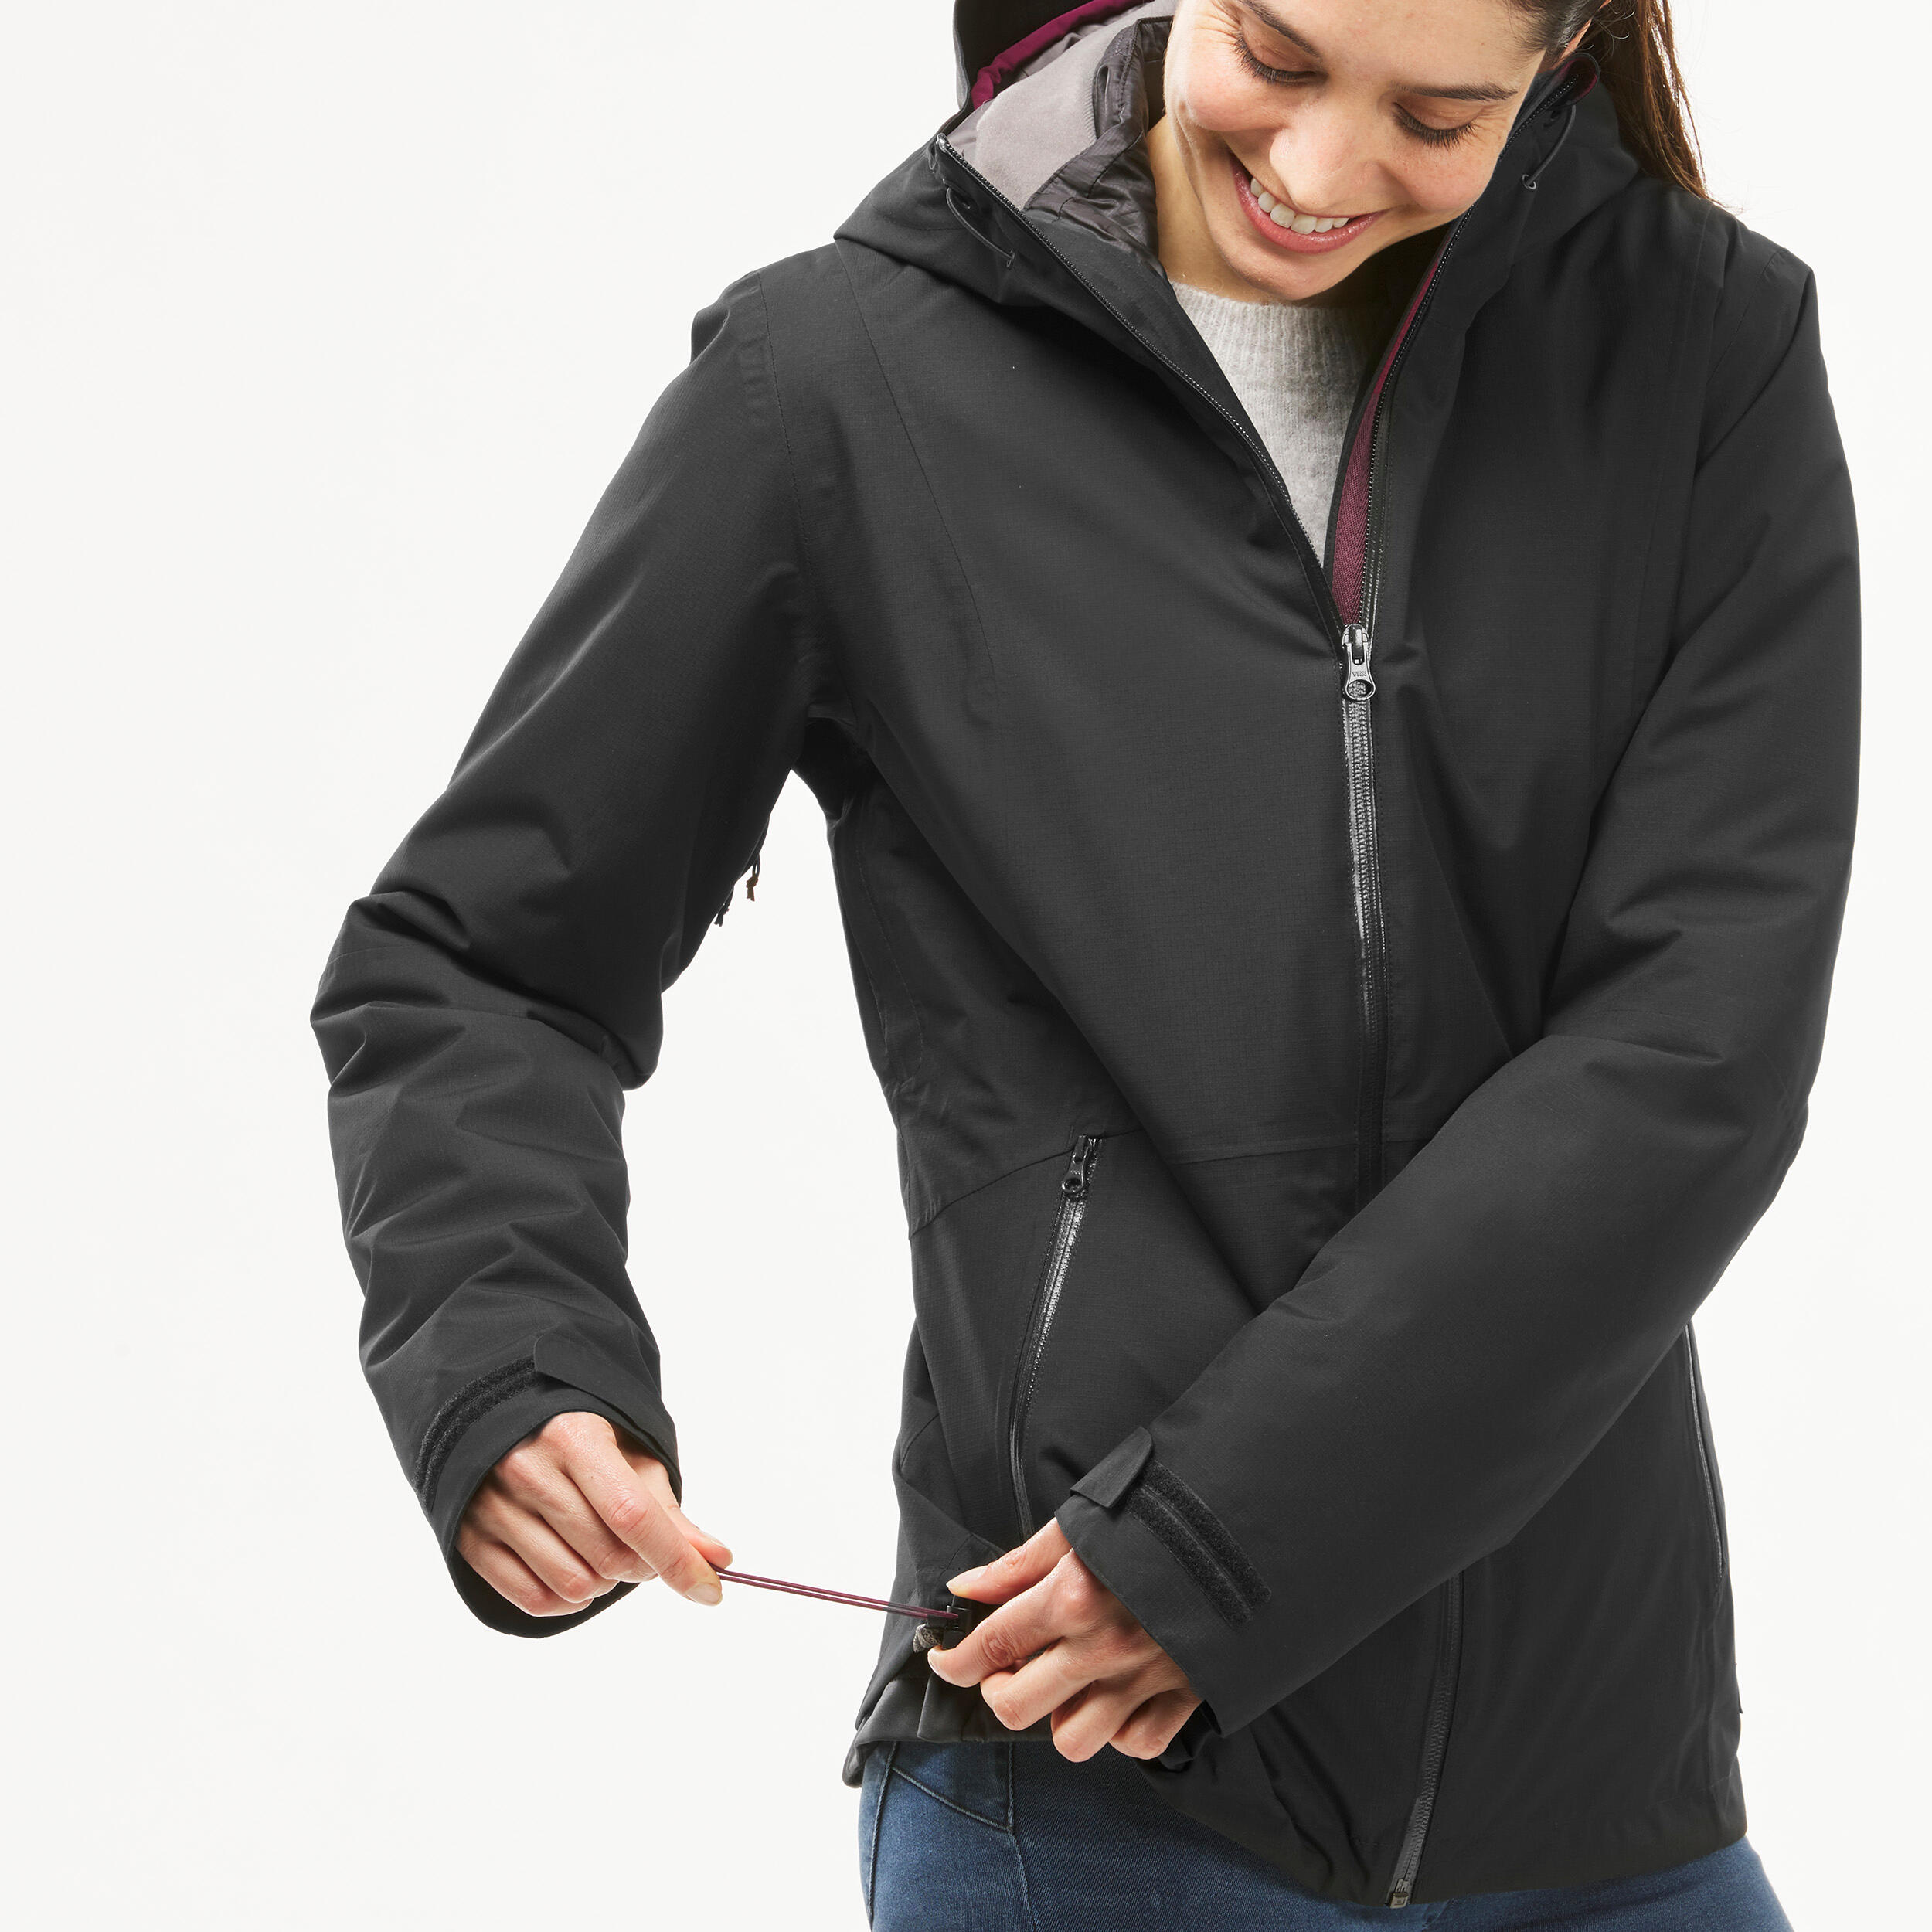 Buy Women's Hiking Warm Waterproof Jacket X Warm Online | Decathlon